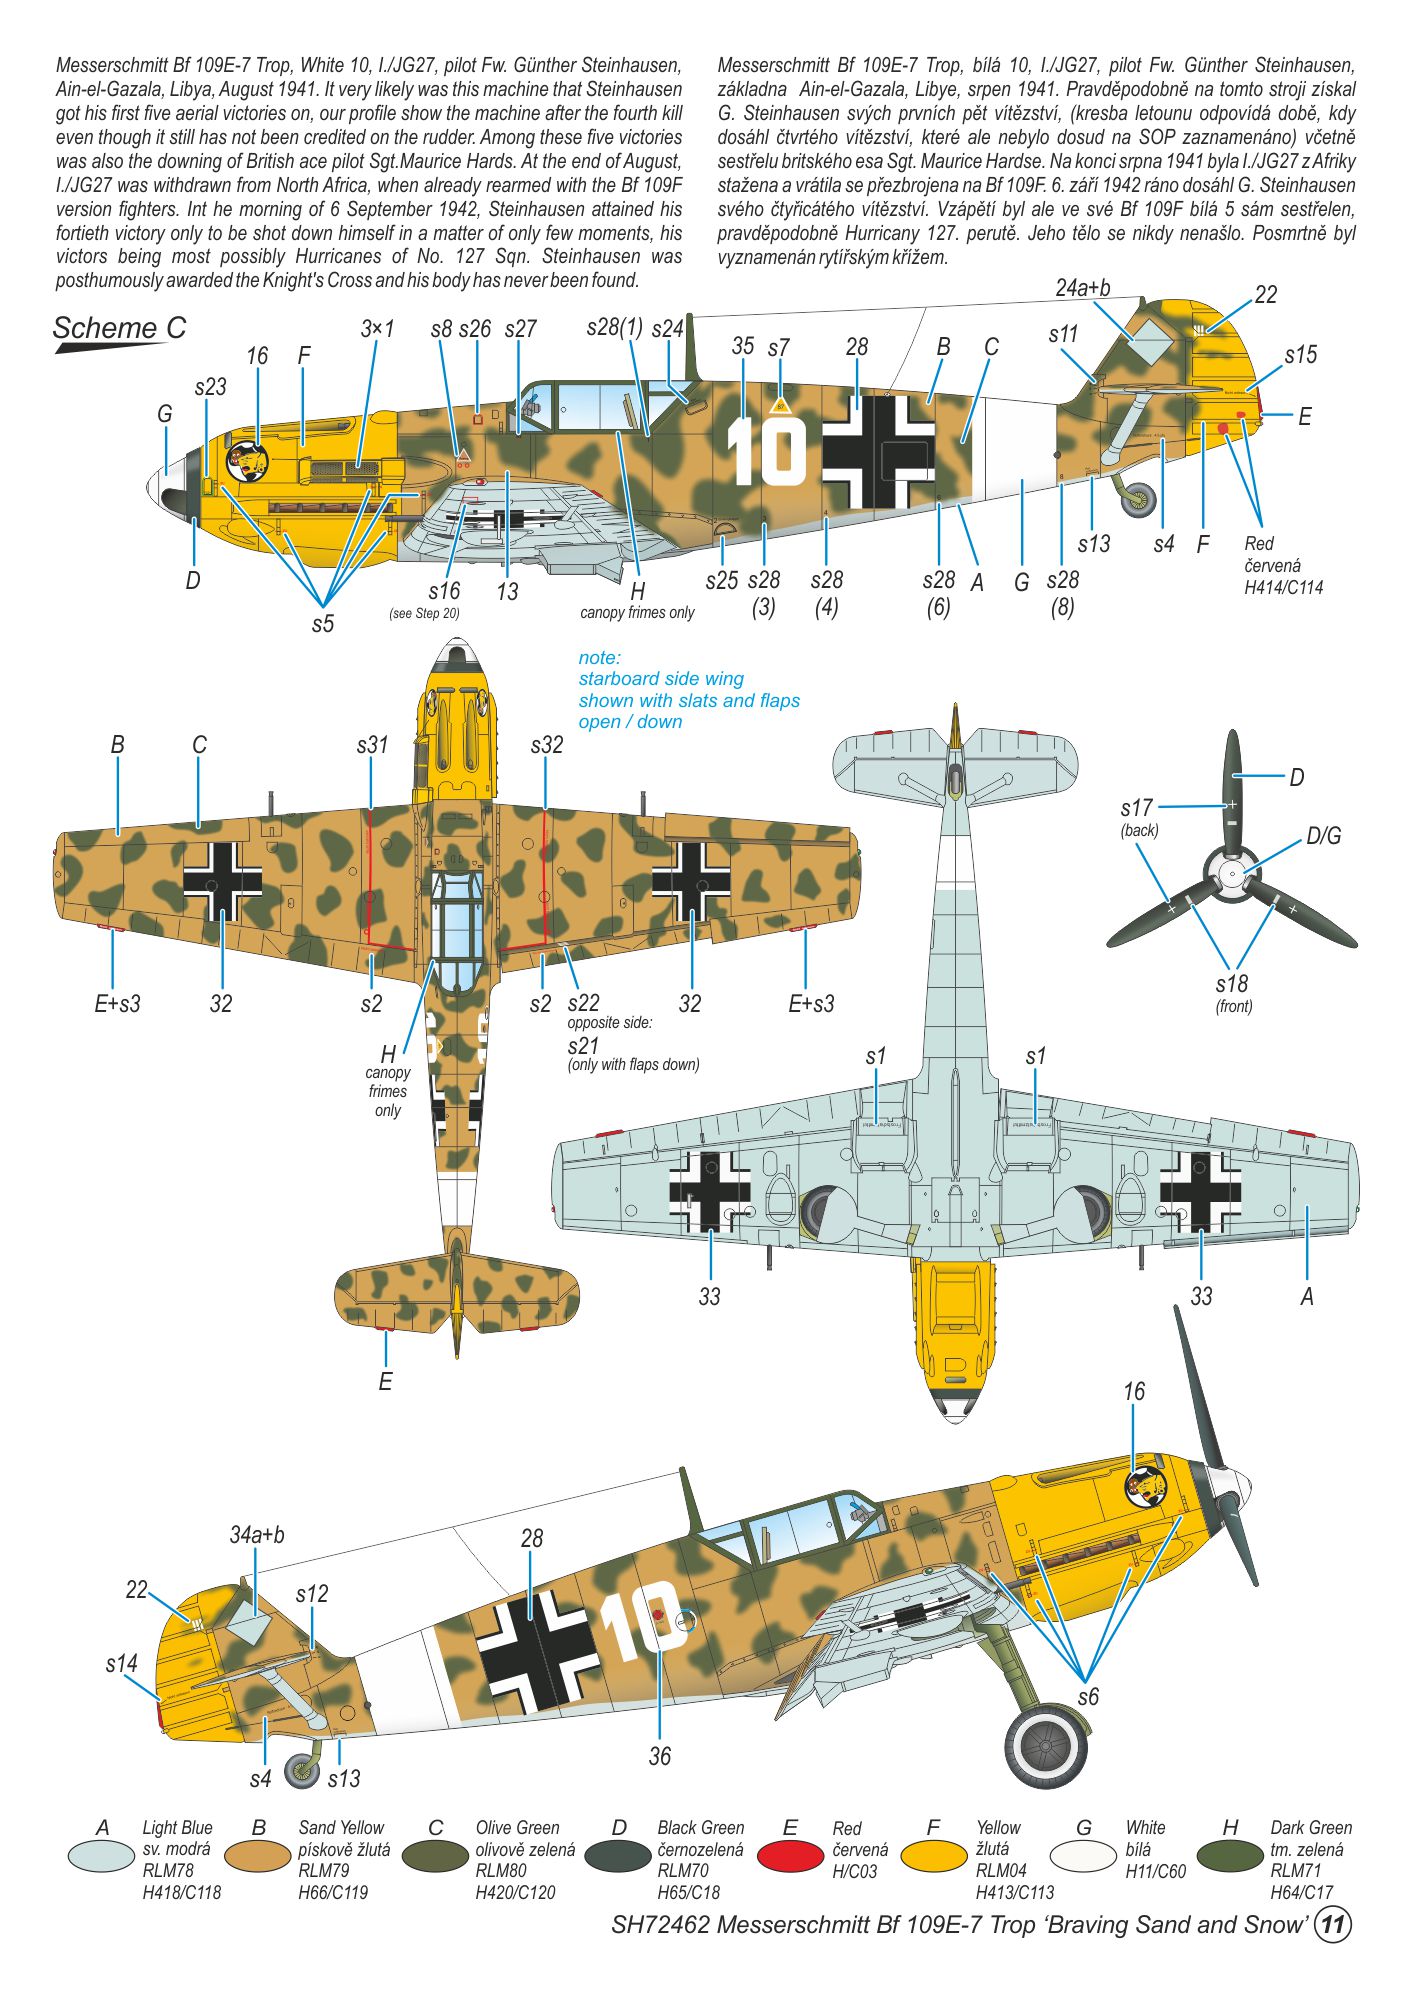 SH72462-Bf109-E-7-Trop-scheme-C.jpg